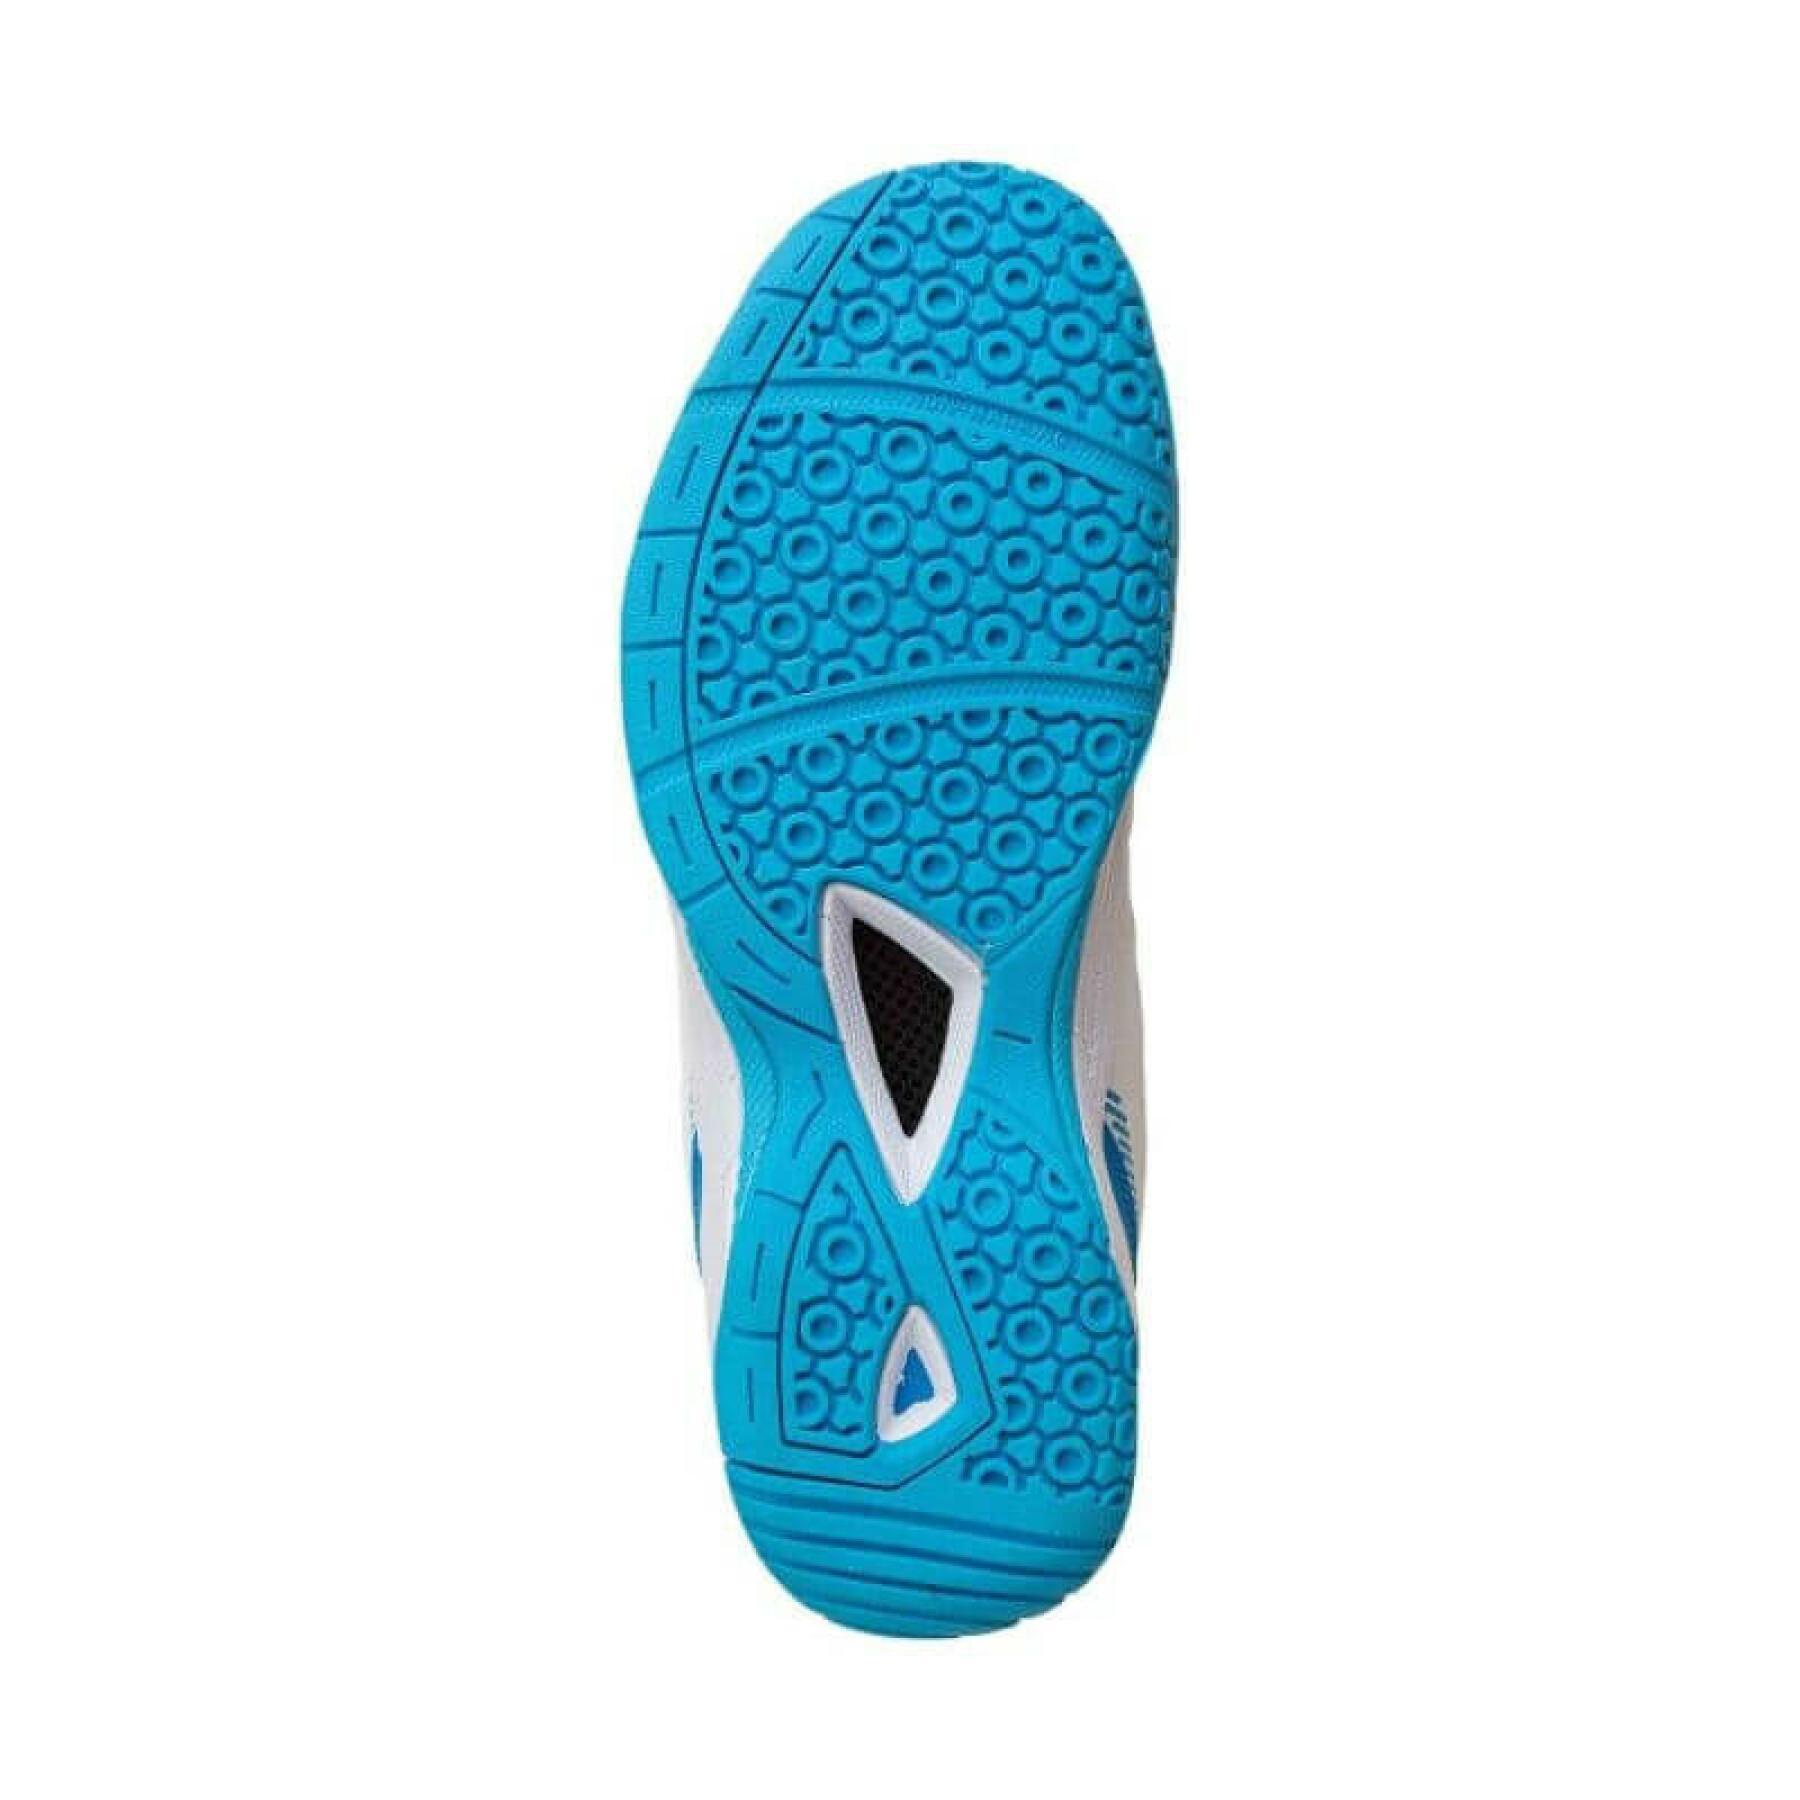 Sapatos de badminton para mulher FZ Forza Leander V3 1002